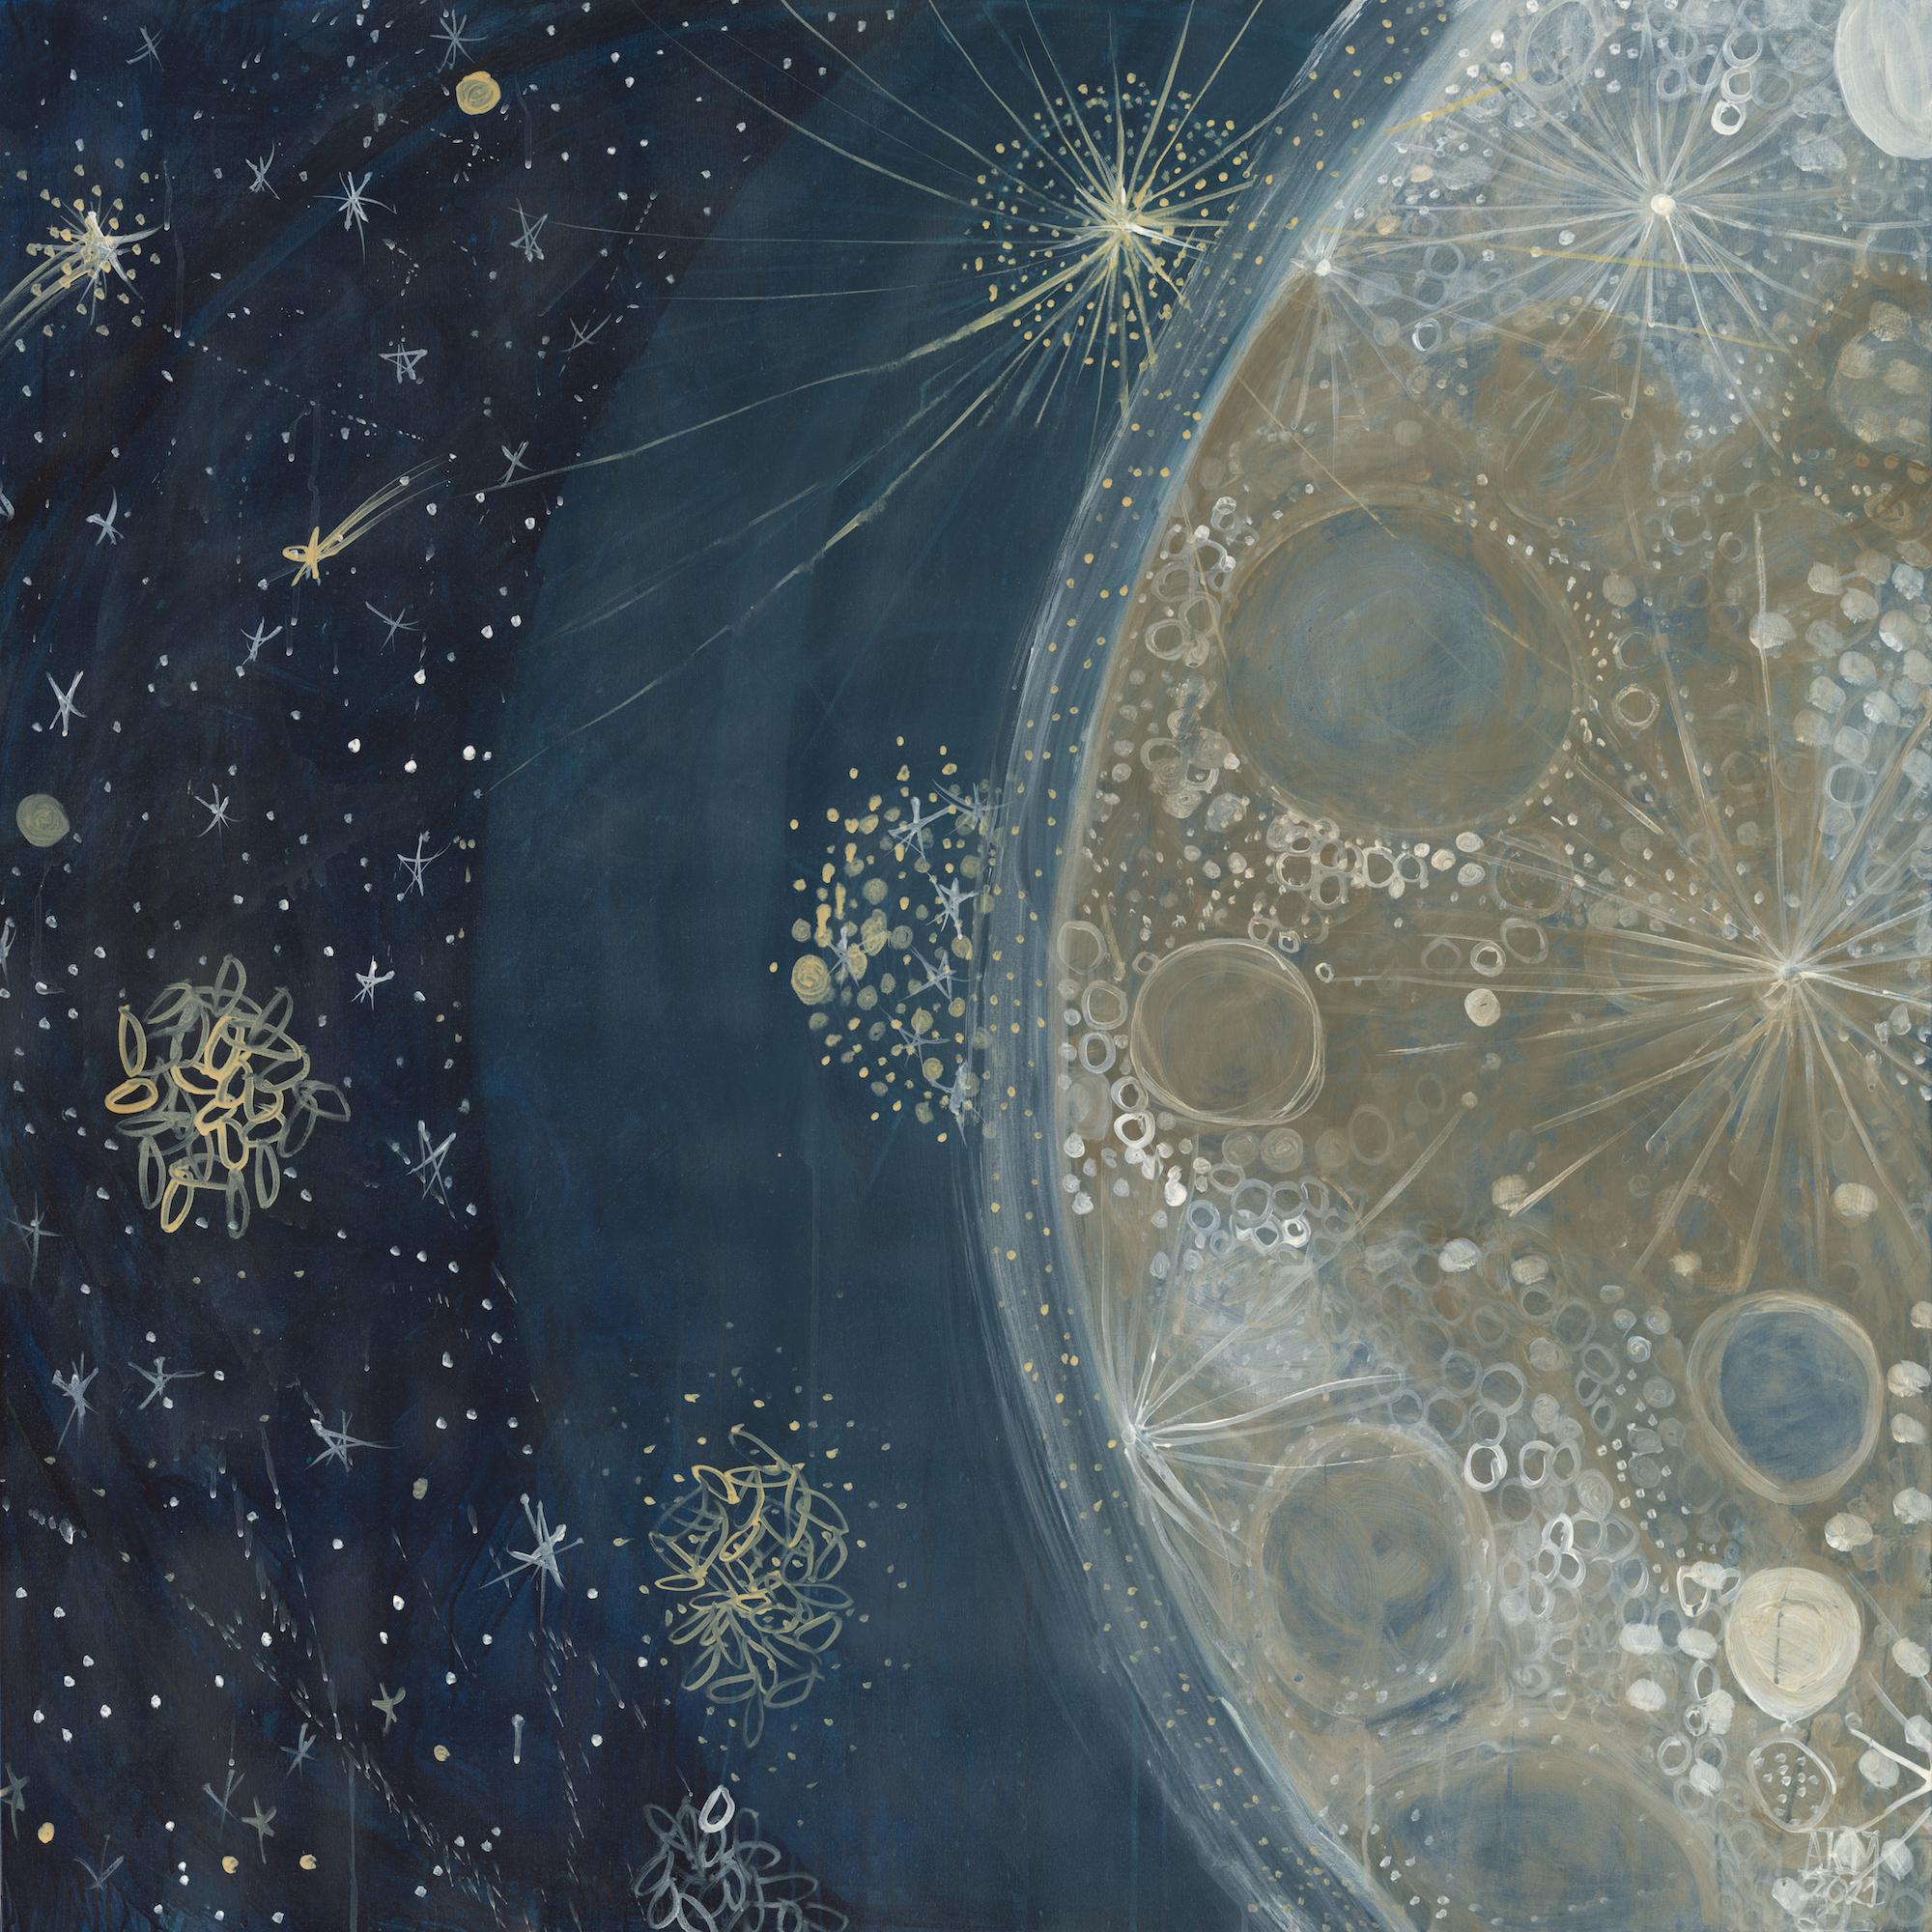 Abstraktes Celestial-Gemälde in Mischtechnik auf Leinwand Blau, Gold, Weiß